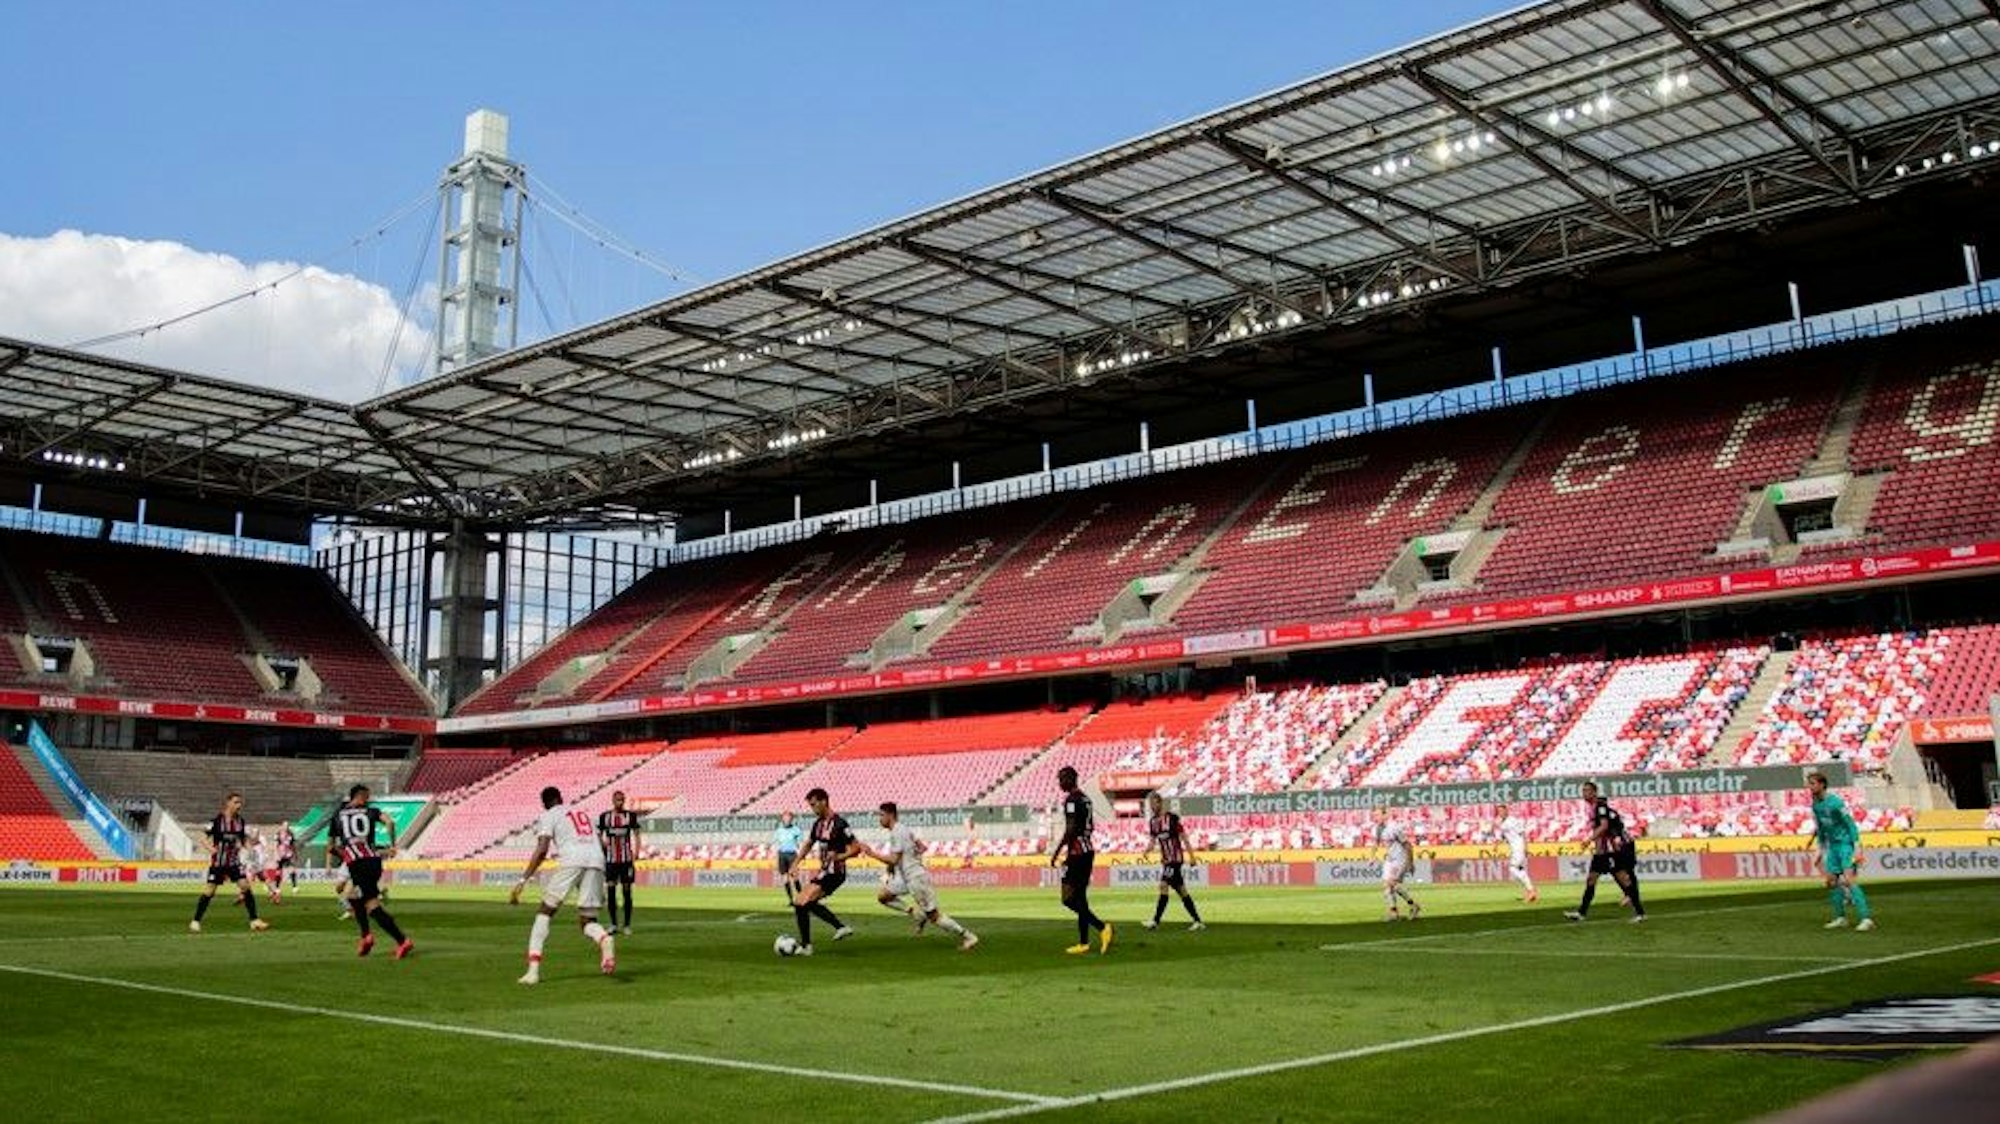 Fußball: Bundesliga, 1. FC Köln - Eintracht Frankfurt, 33. Spieltag im RheinEnergieStadion. Die Partie findet als Geiersterspiel ohne Zuschauer statt.